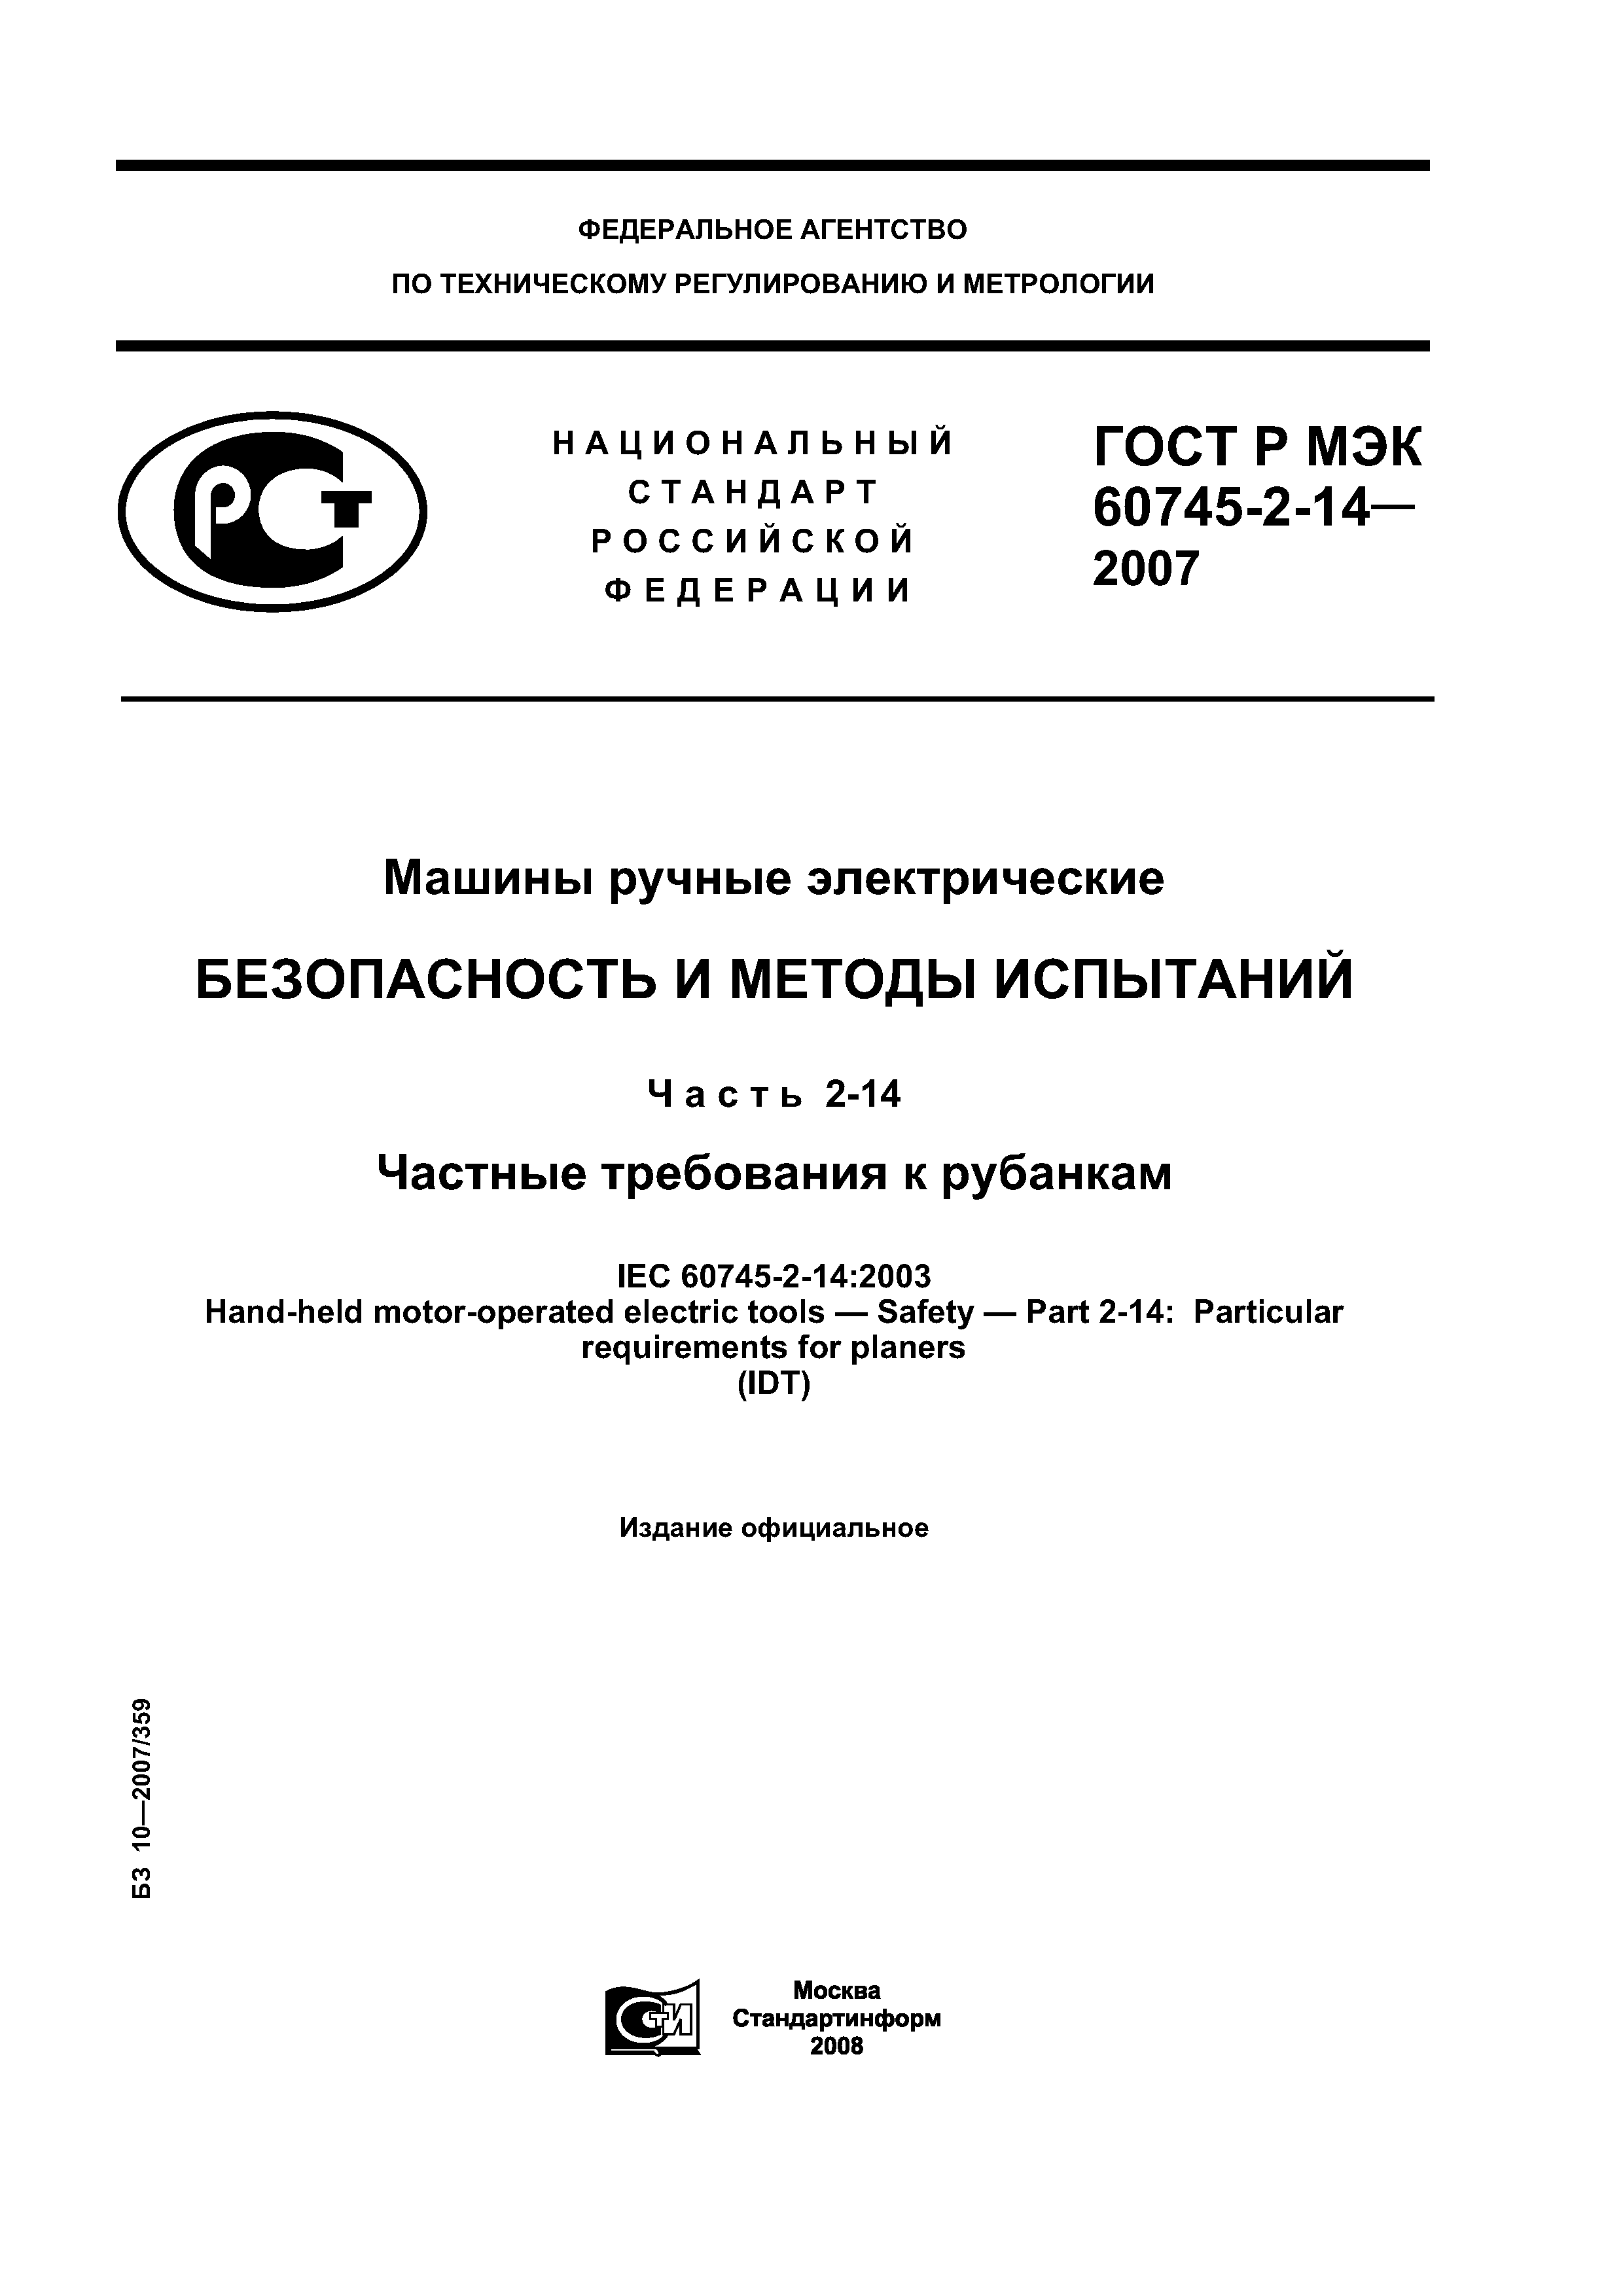 ГОСТ Р МЭК 60745-2-14-2007